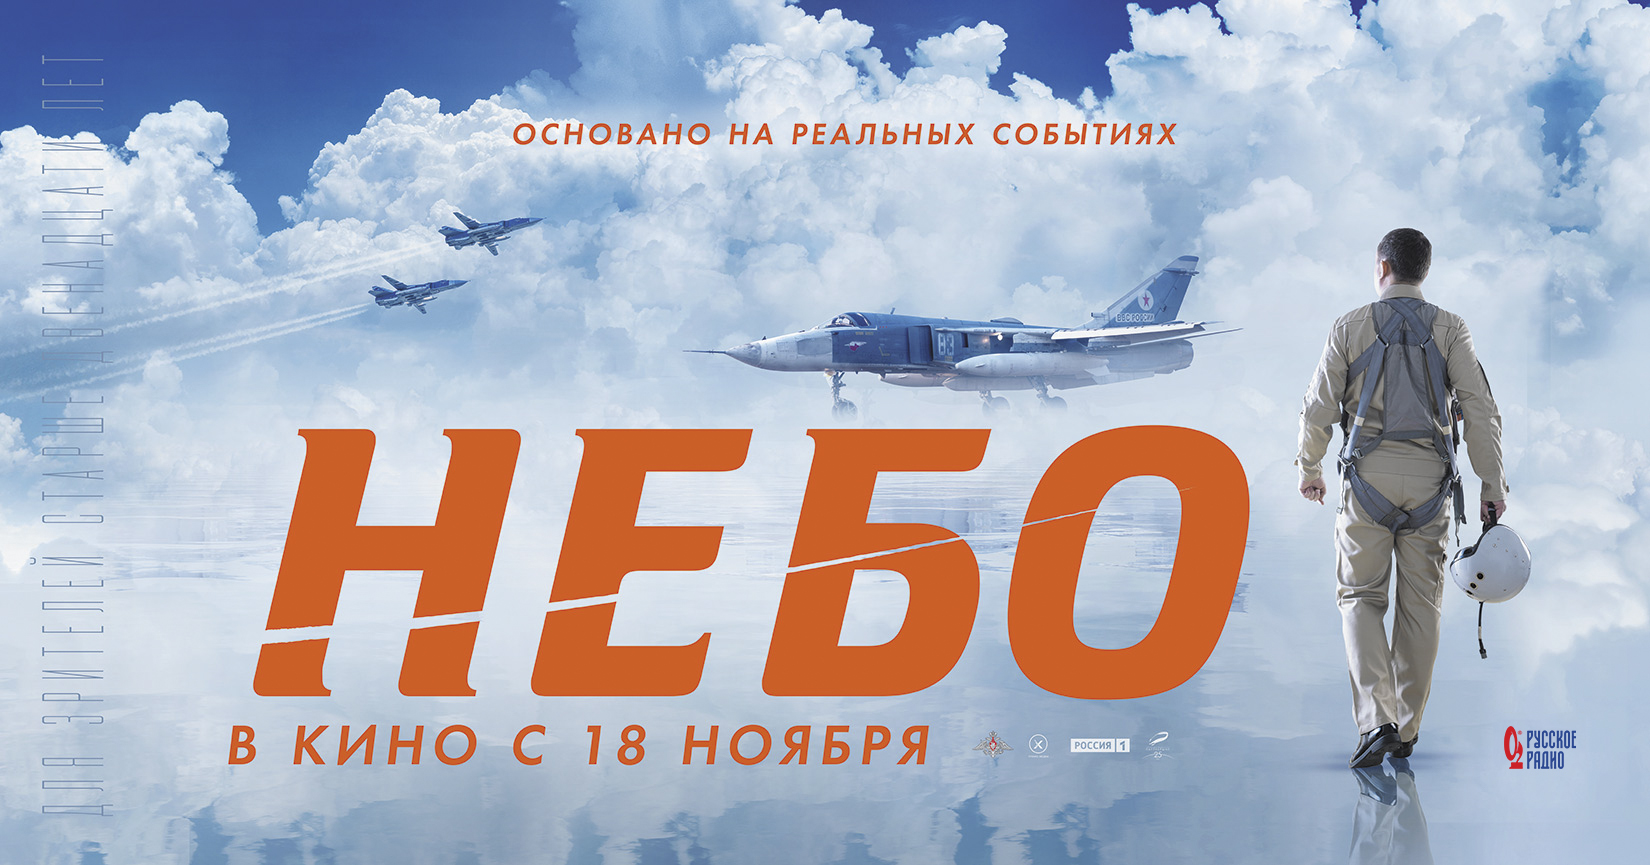 Батайчан приглашают посмотреть фильм "Небо" 